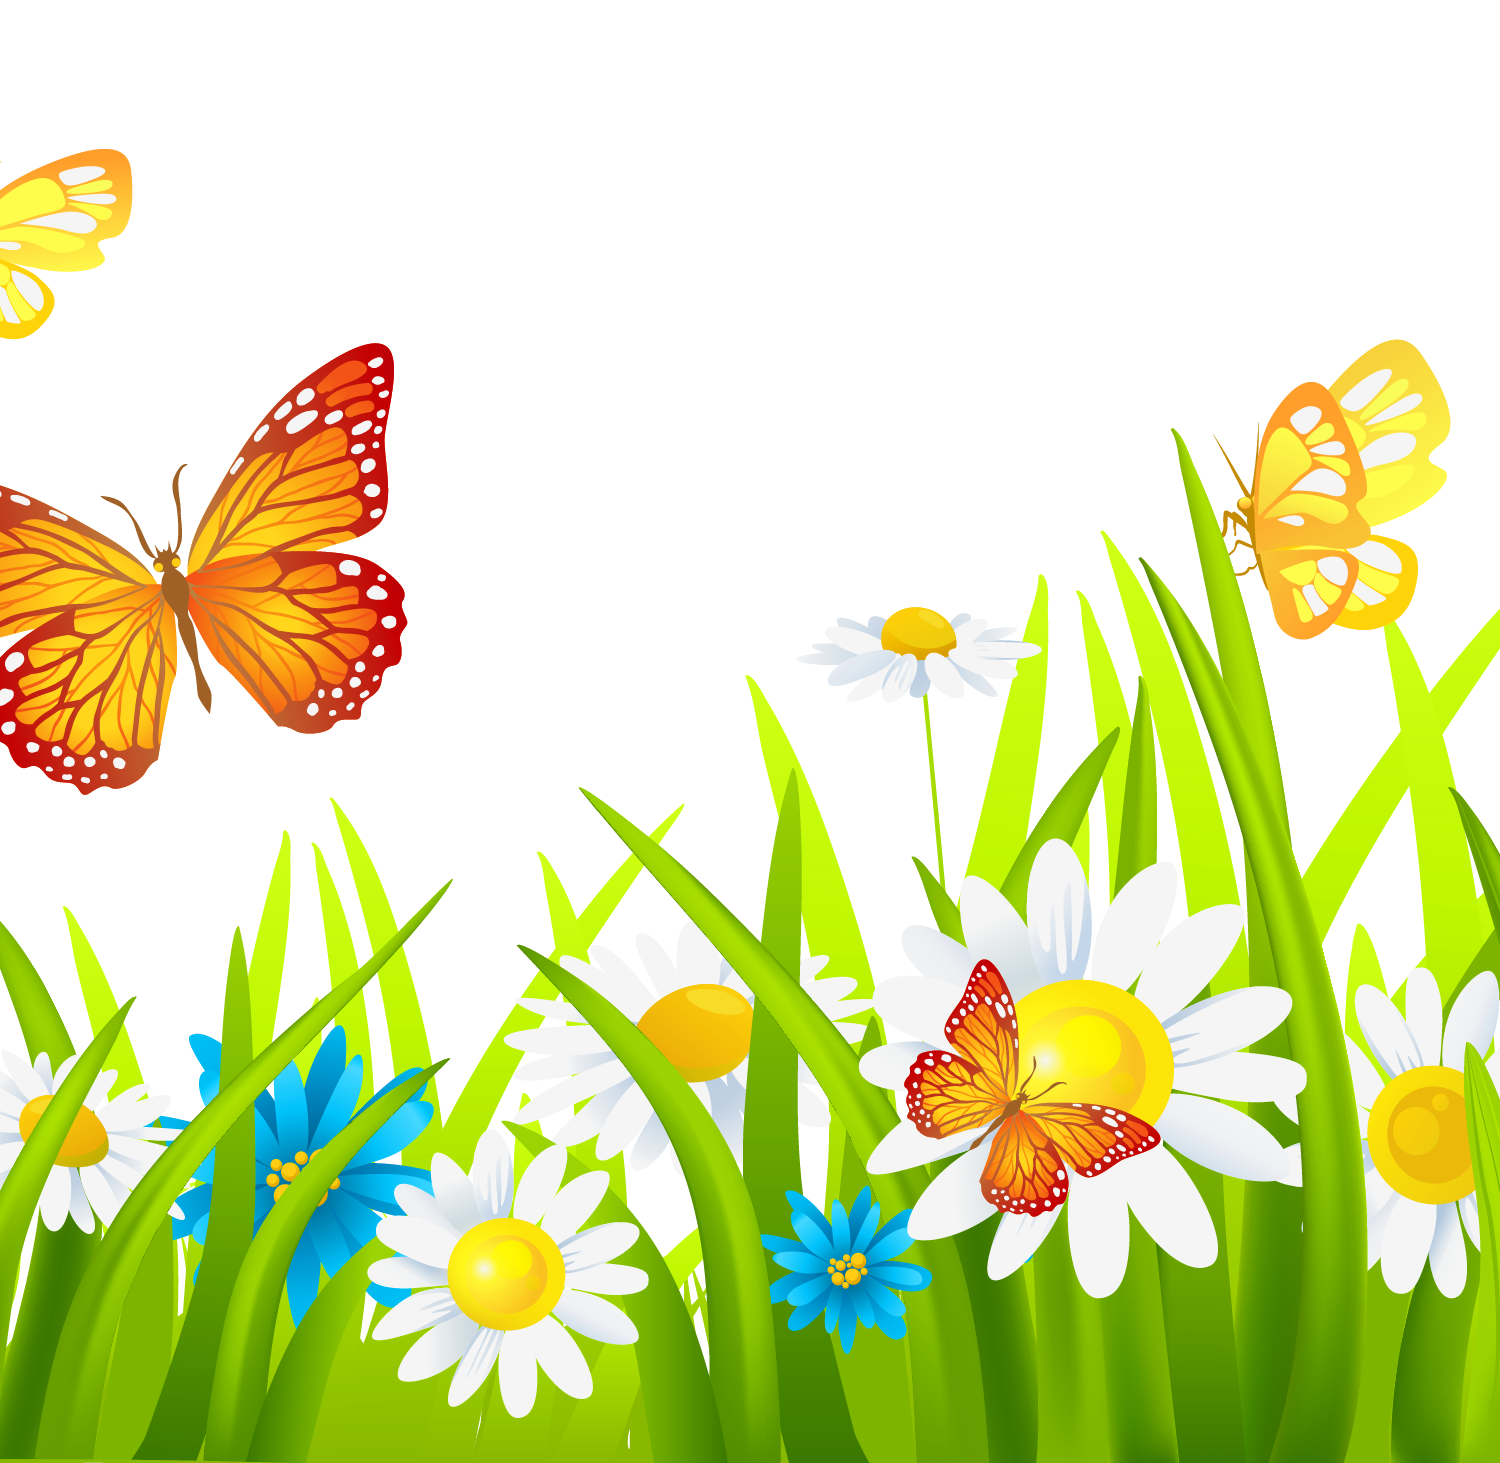 Полянка бабочки и цветочки. Полянка с бабочками. Лужайка с цветами для детей. Бабочки цветочки травка. Травка с цветочками